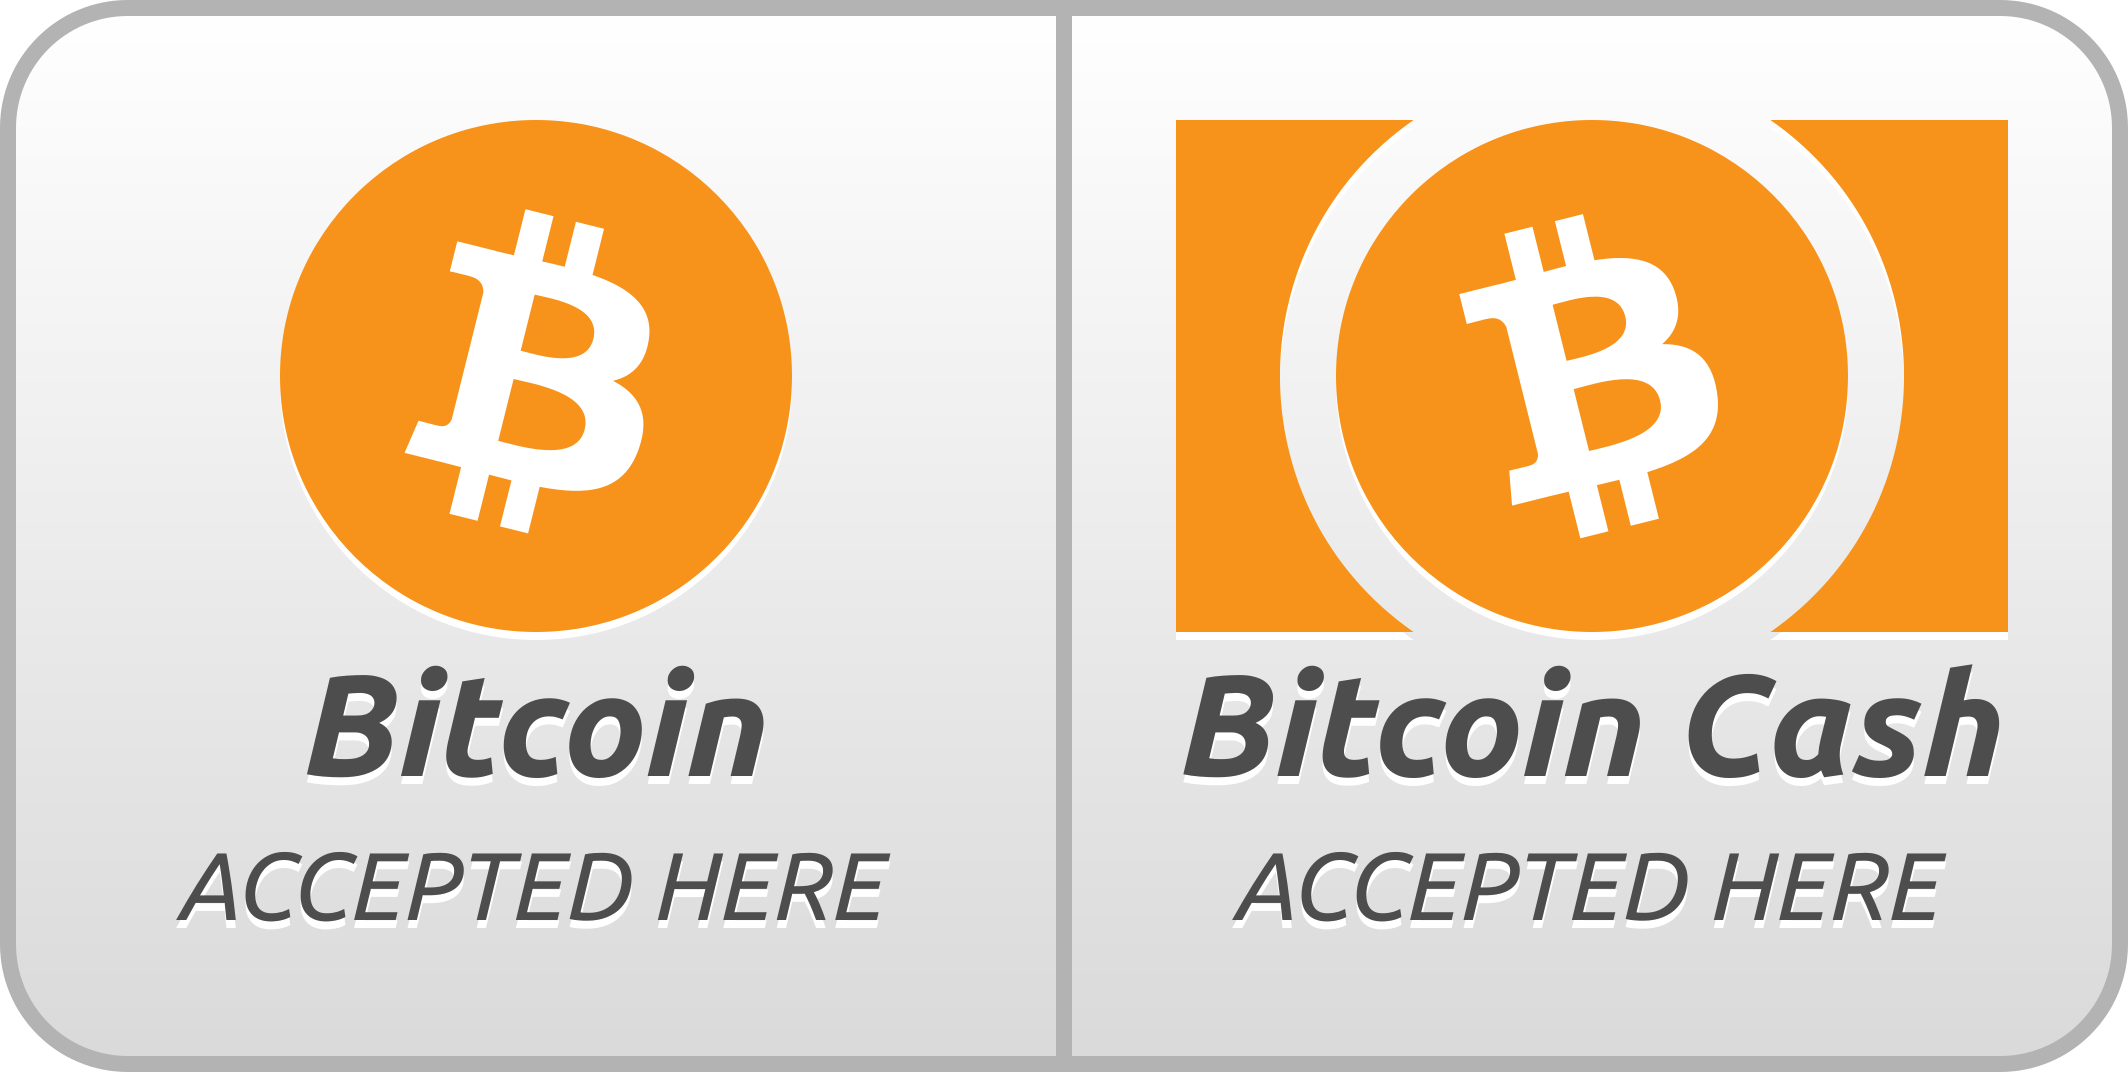 Cash Accepted Logo - Accept Small Bitcoin Bitcoincash Round, Bitcoin Cash